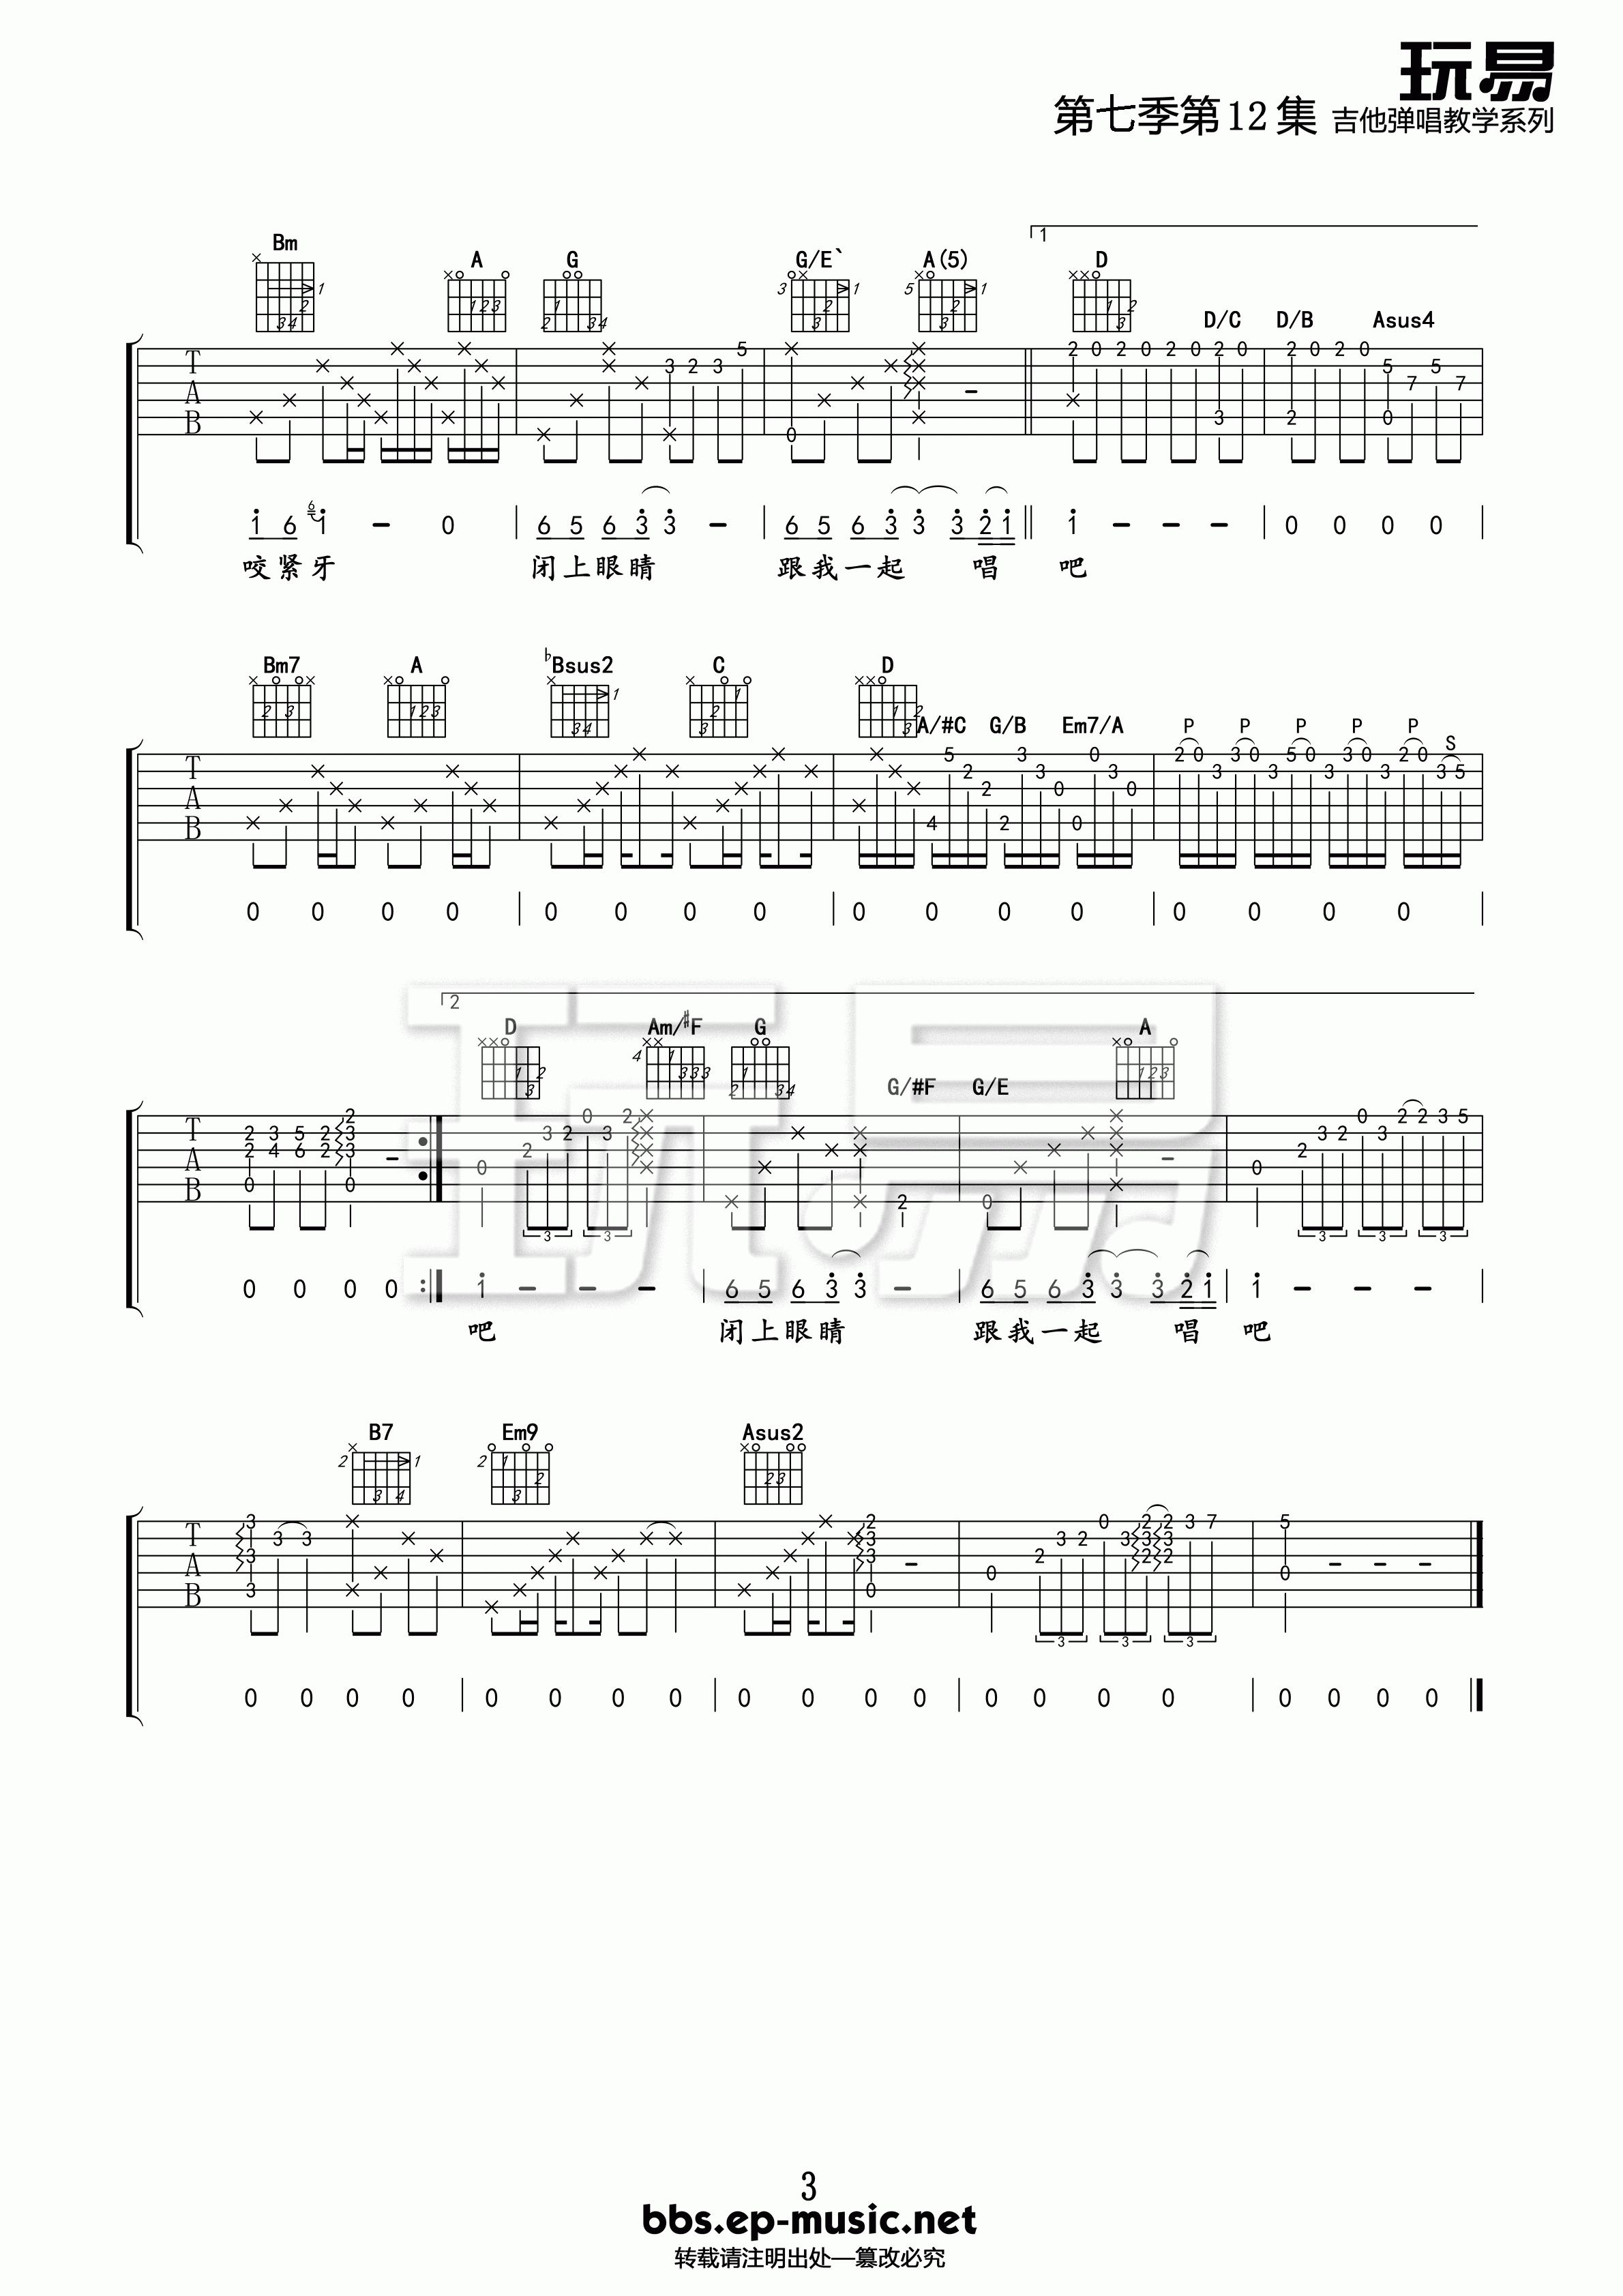 国王的新歌吉他谱 E调精选版-玩易吉他编配-游鸿明1